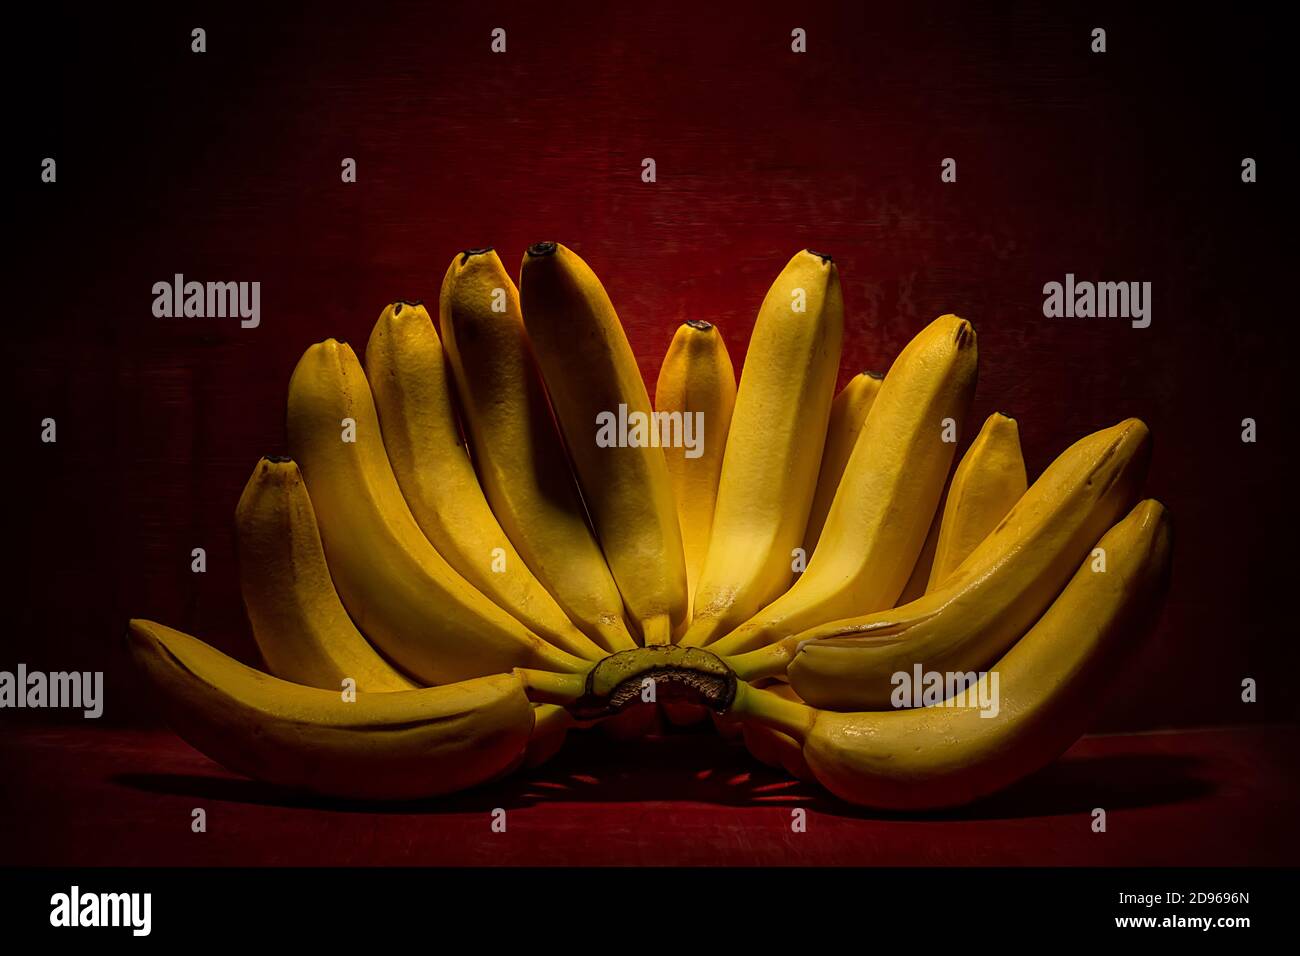 Bouquet de bananes mûres jaunes sur fond de bois rouge foncé. Concept érotique. Banque D'Images